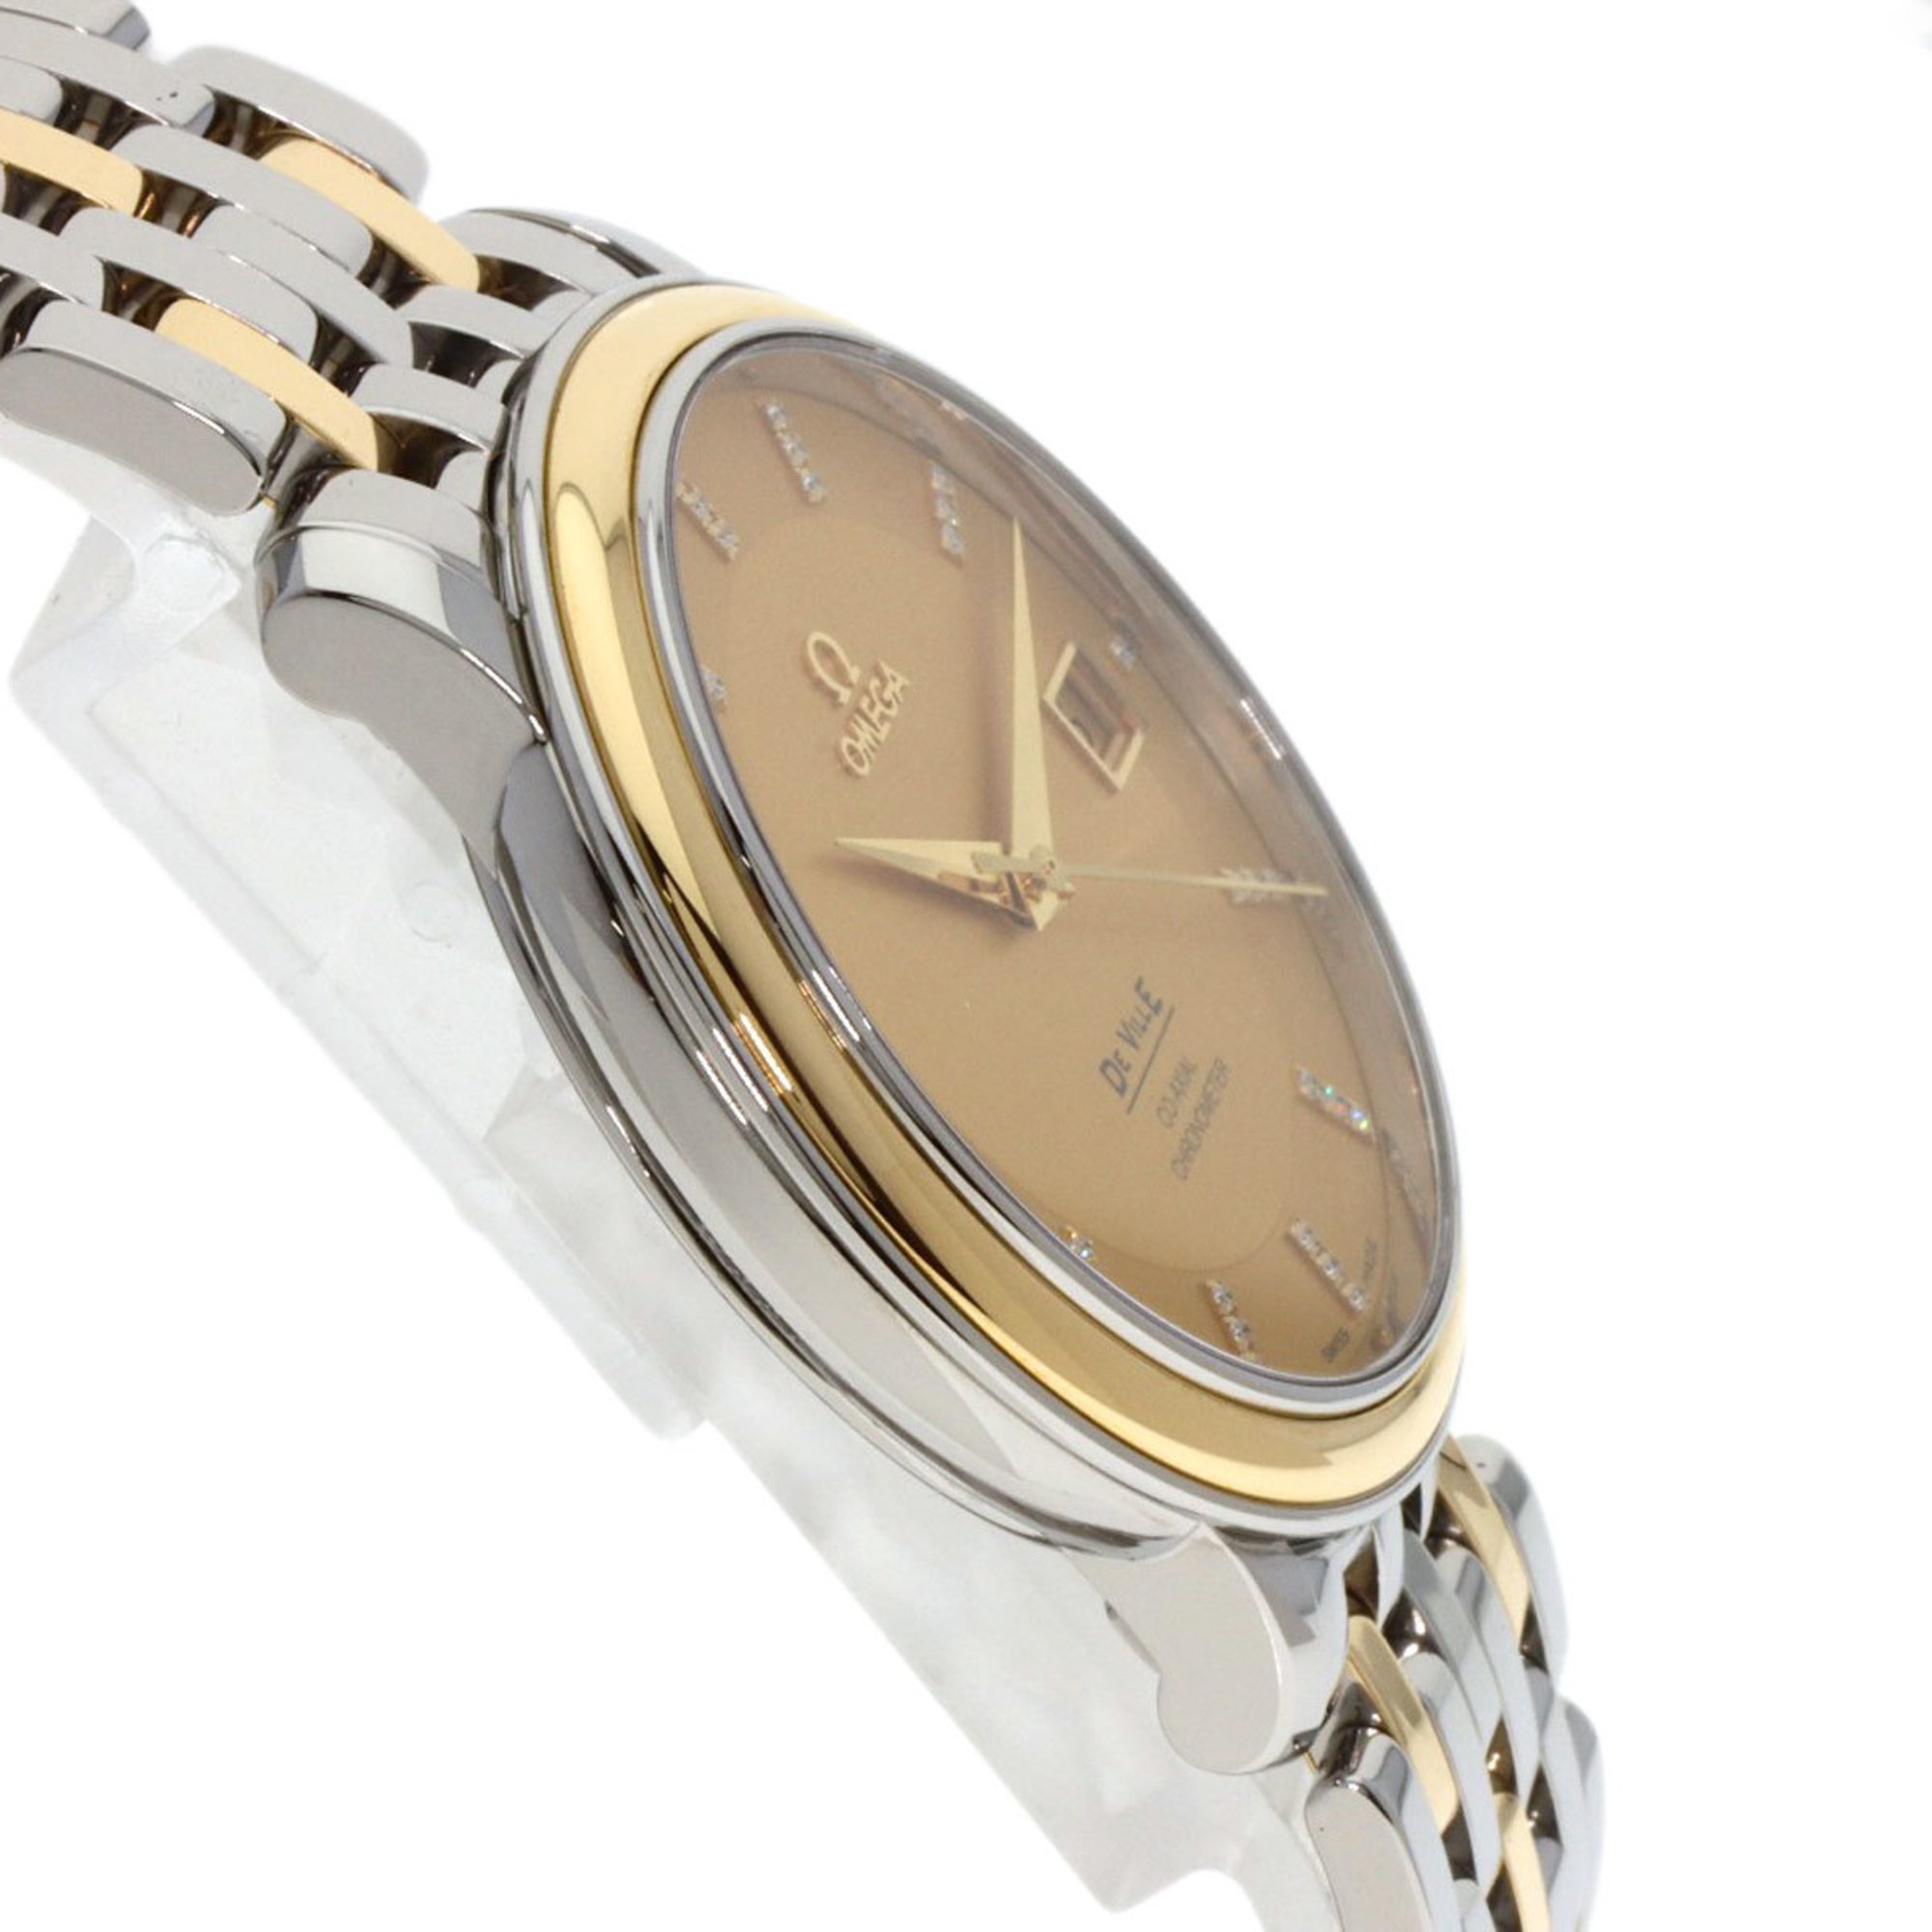 OMEGA 4374.15 De Ville Prestige Co-Axial Diamond Watch Stainless Steel/SSxK18YG Men's